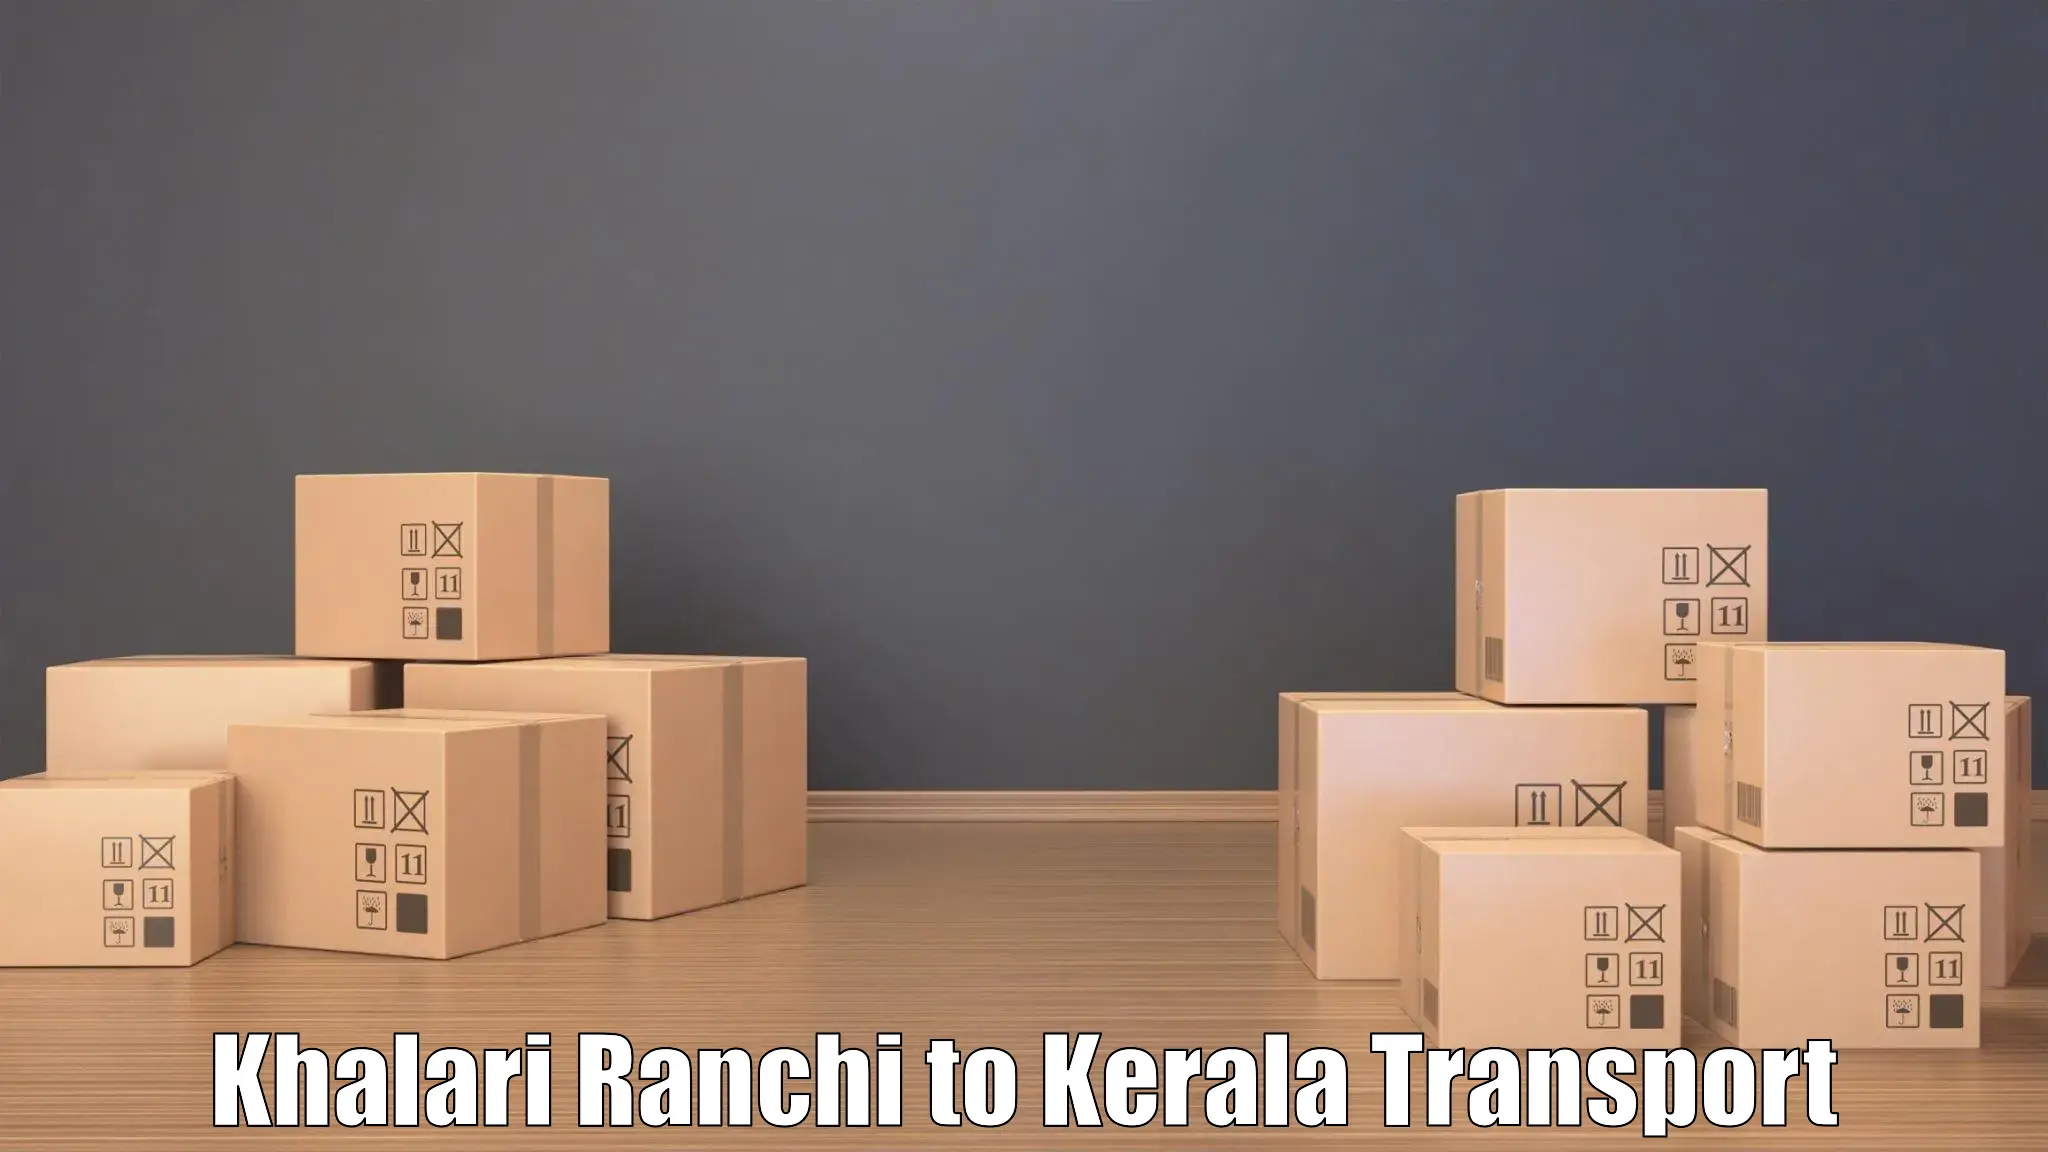 Intercity transport Khalari Ranchi to Haripad